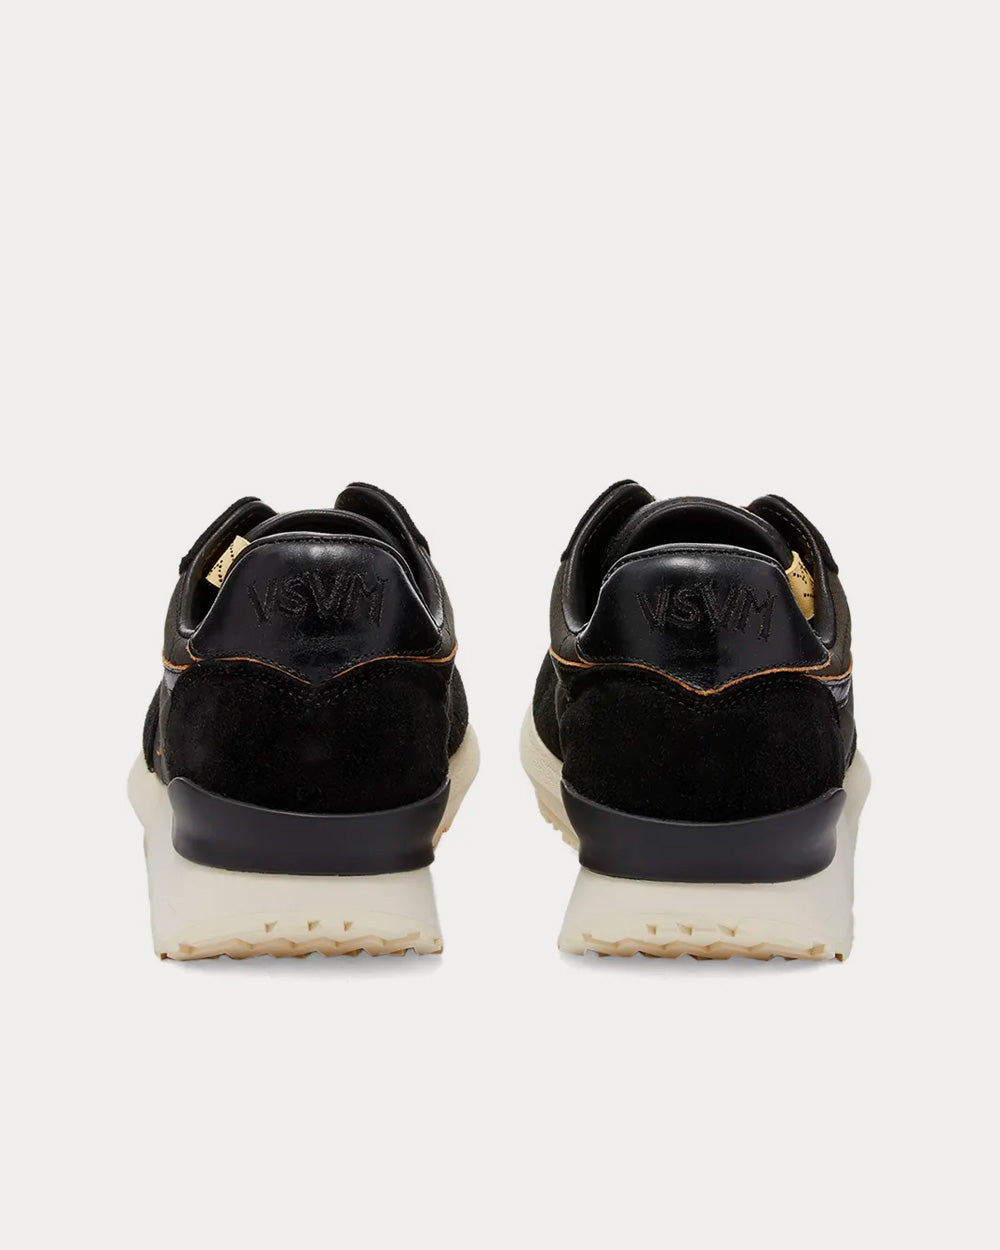 Visvim - FKT Runner Black Low Top Sneakers